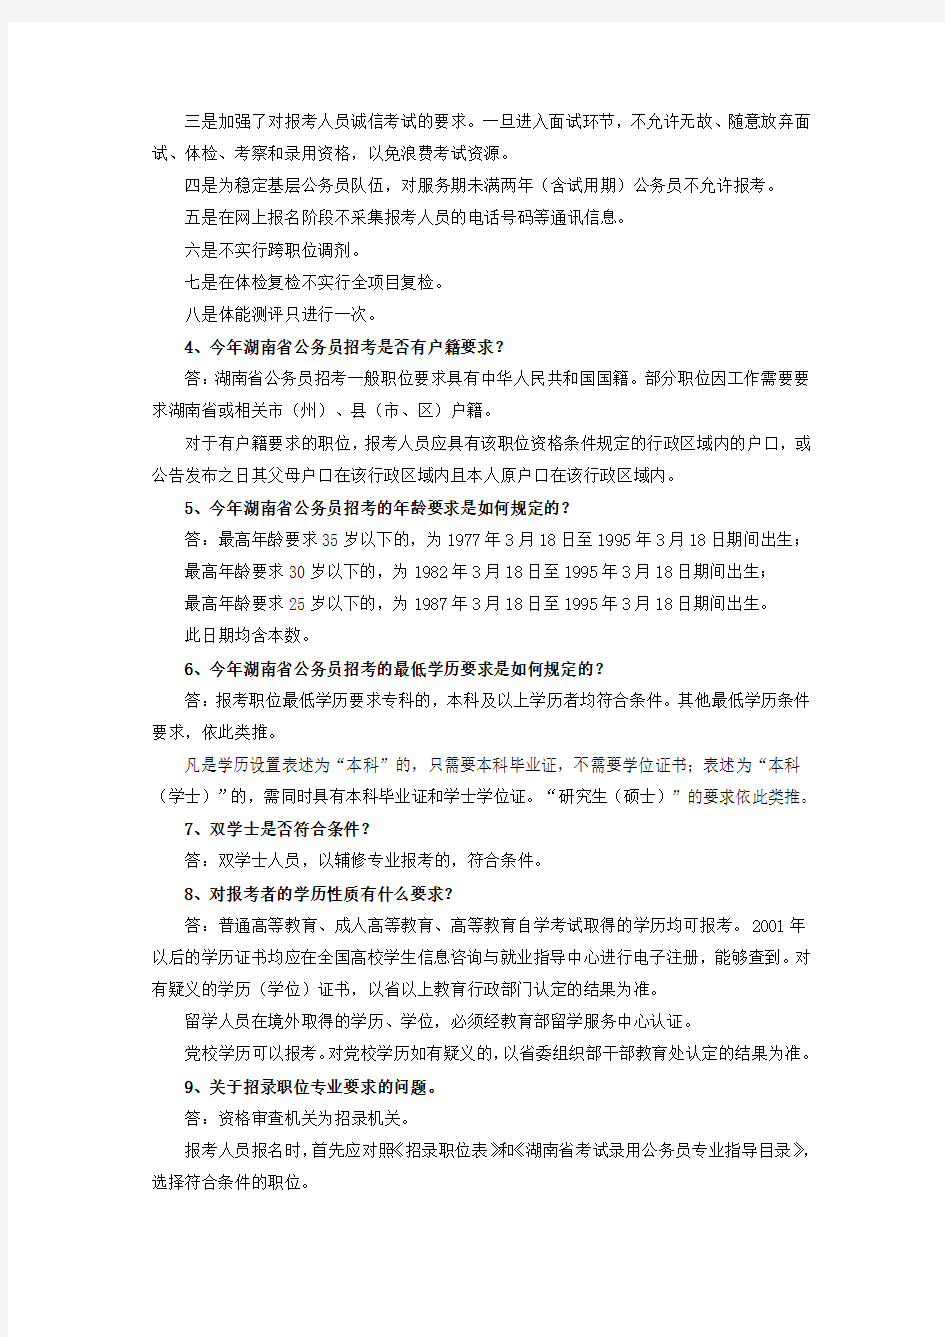 湖南省公务员考录报考指南及常见问题解答